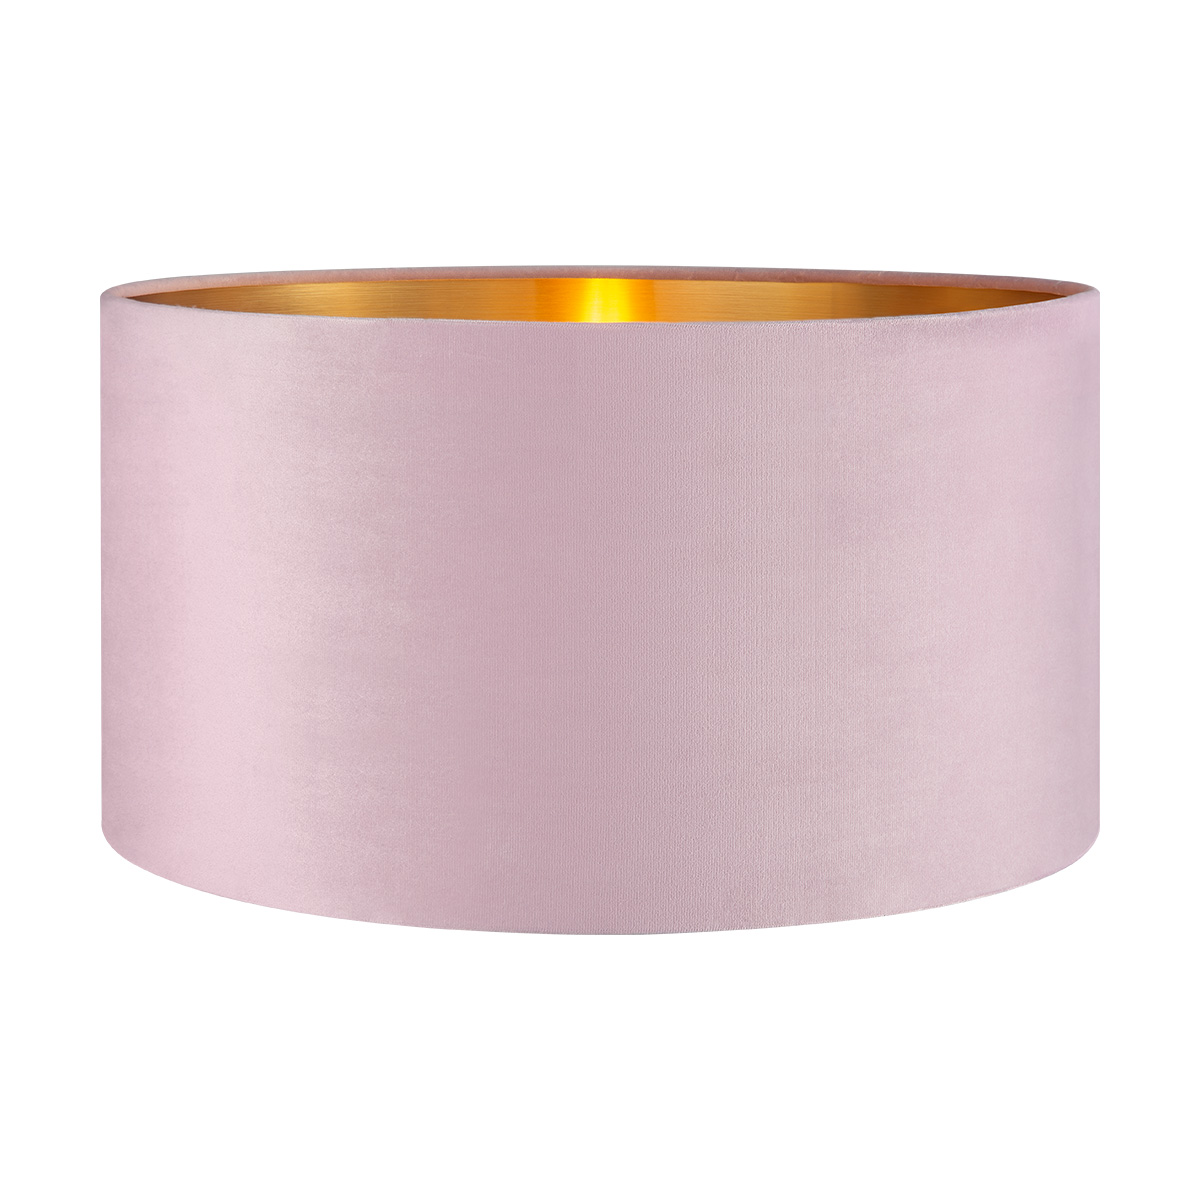 Tangla lighting - TLS7564-40PK - Lampshade - velvet - pink - diameter 40cm - E27